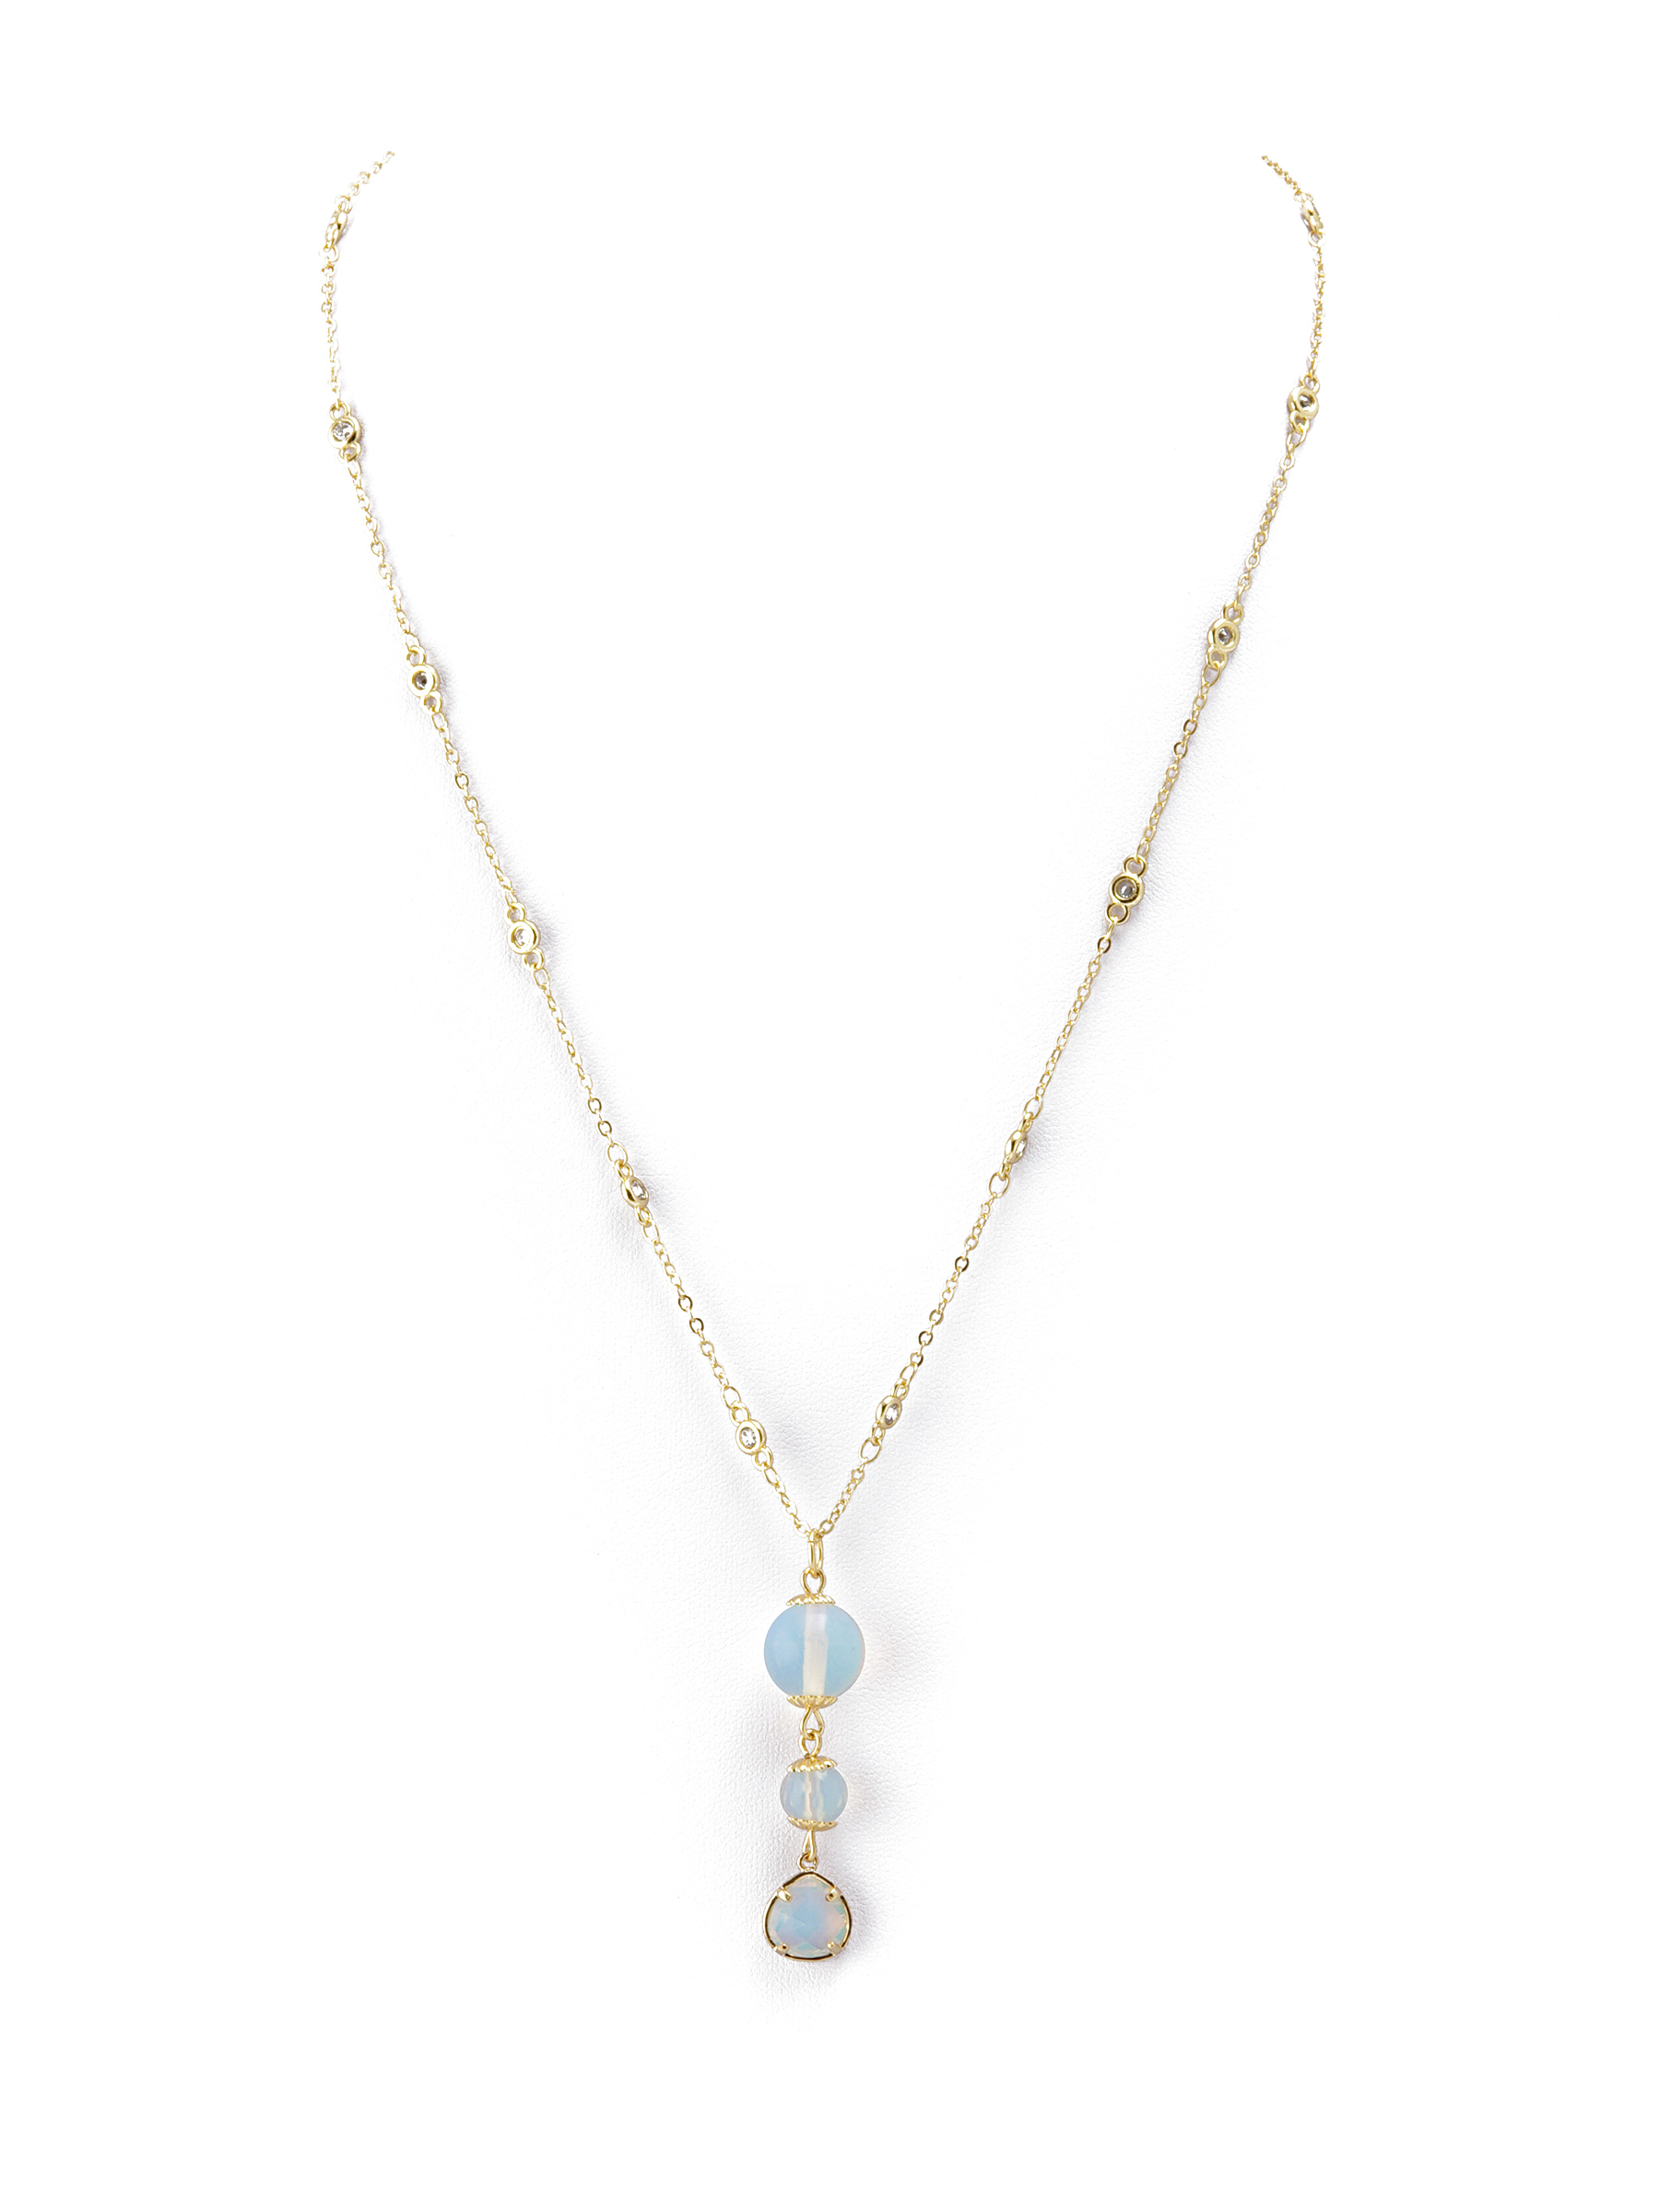 фото Колье/ожерелье бижутерное ЖемАрт с418-58, Бижутерный сплав, Фианит, Лунный камень, голубой, золотой